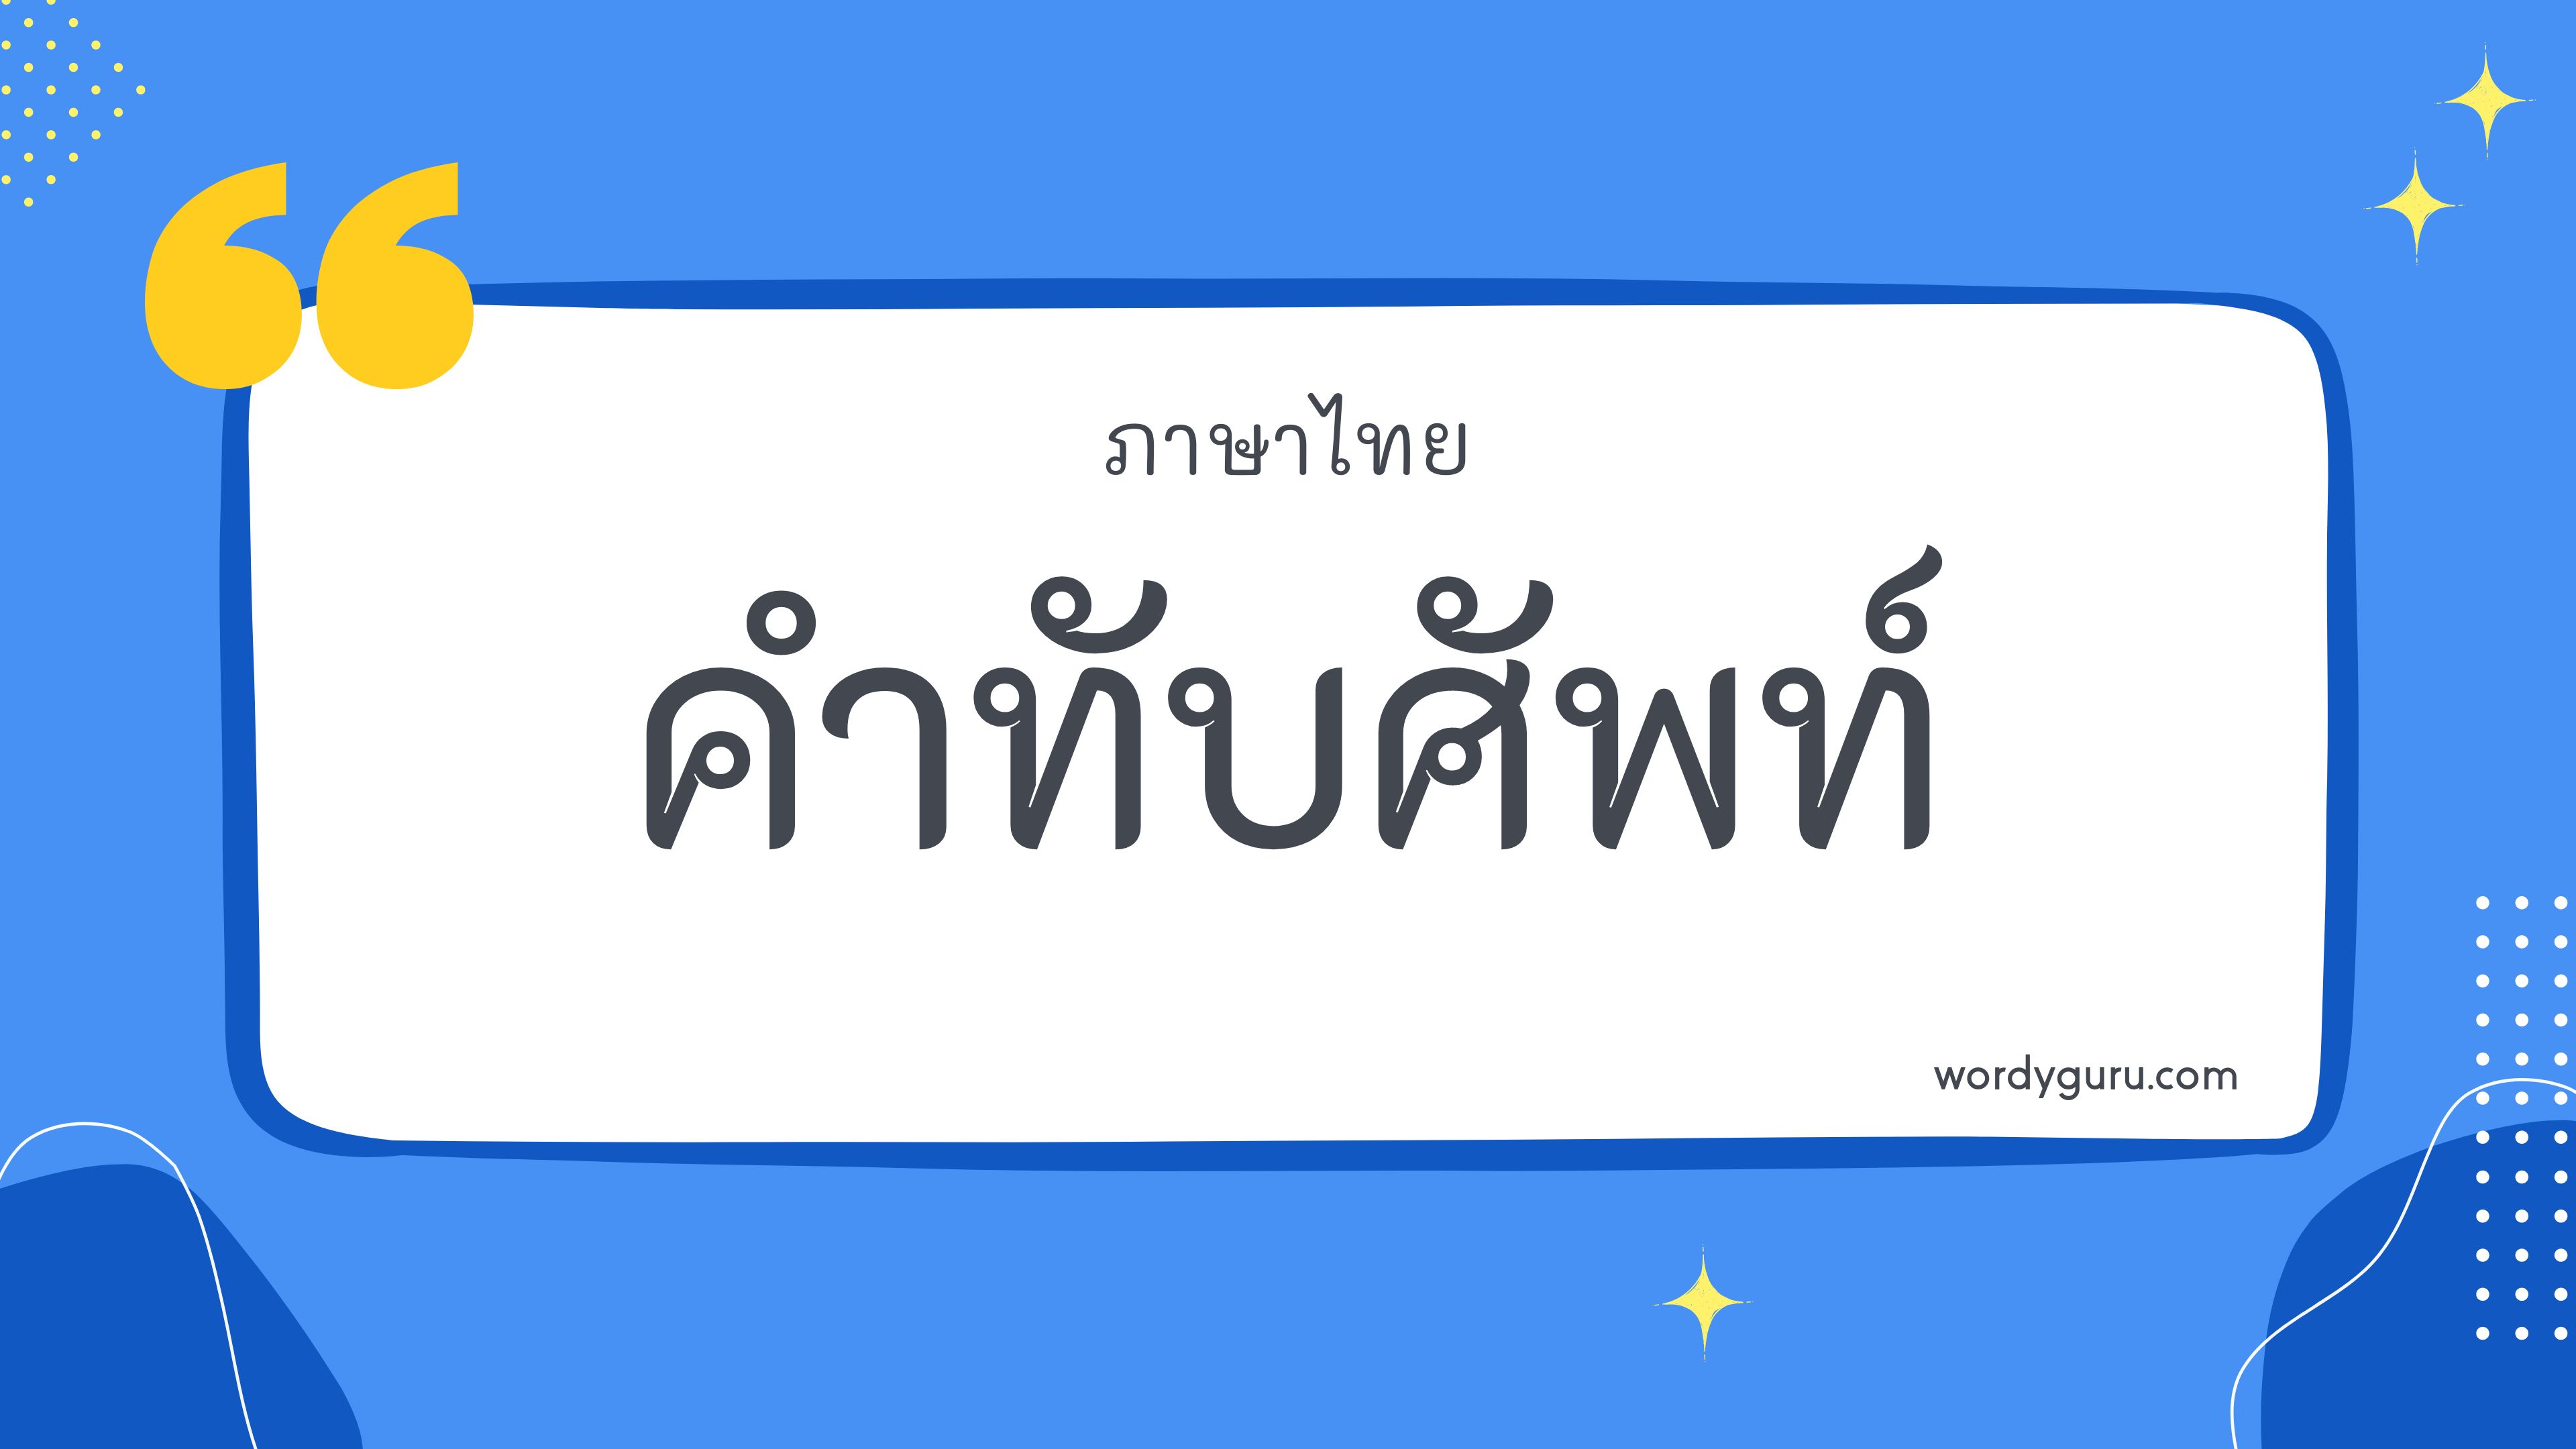 รวบรวมคำทับศัพท์ในภาษาต่าง ๆ มาเขียนเป็นภาษาไทย